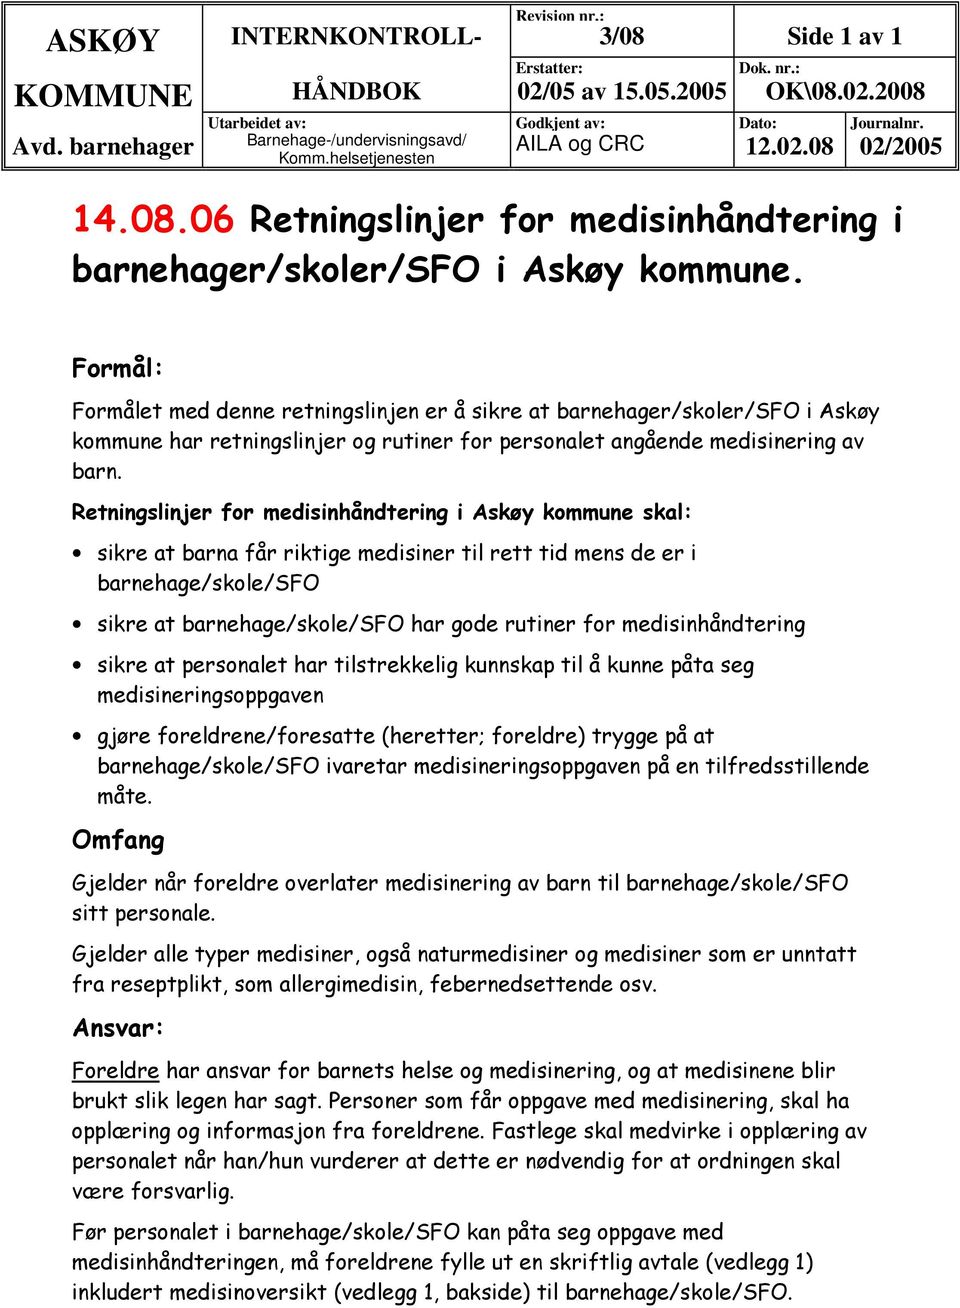 Retningslinjer for medisinhåndtering i Askøy kommune skal: sikre at barna får riktige medisiner til rett tid mens de er i barnehage/skole/sfo sikre at barnehage/skole/sfo har gode rutiner for